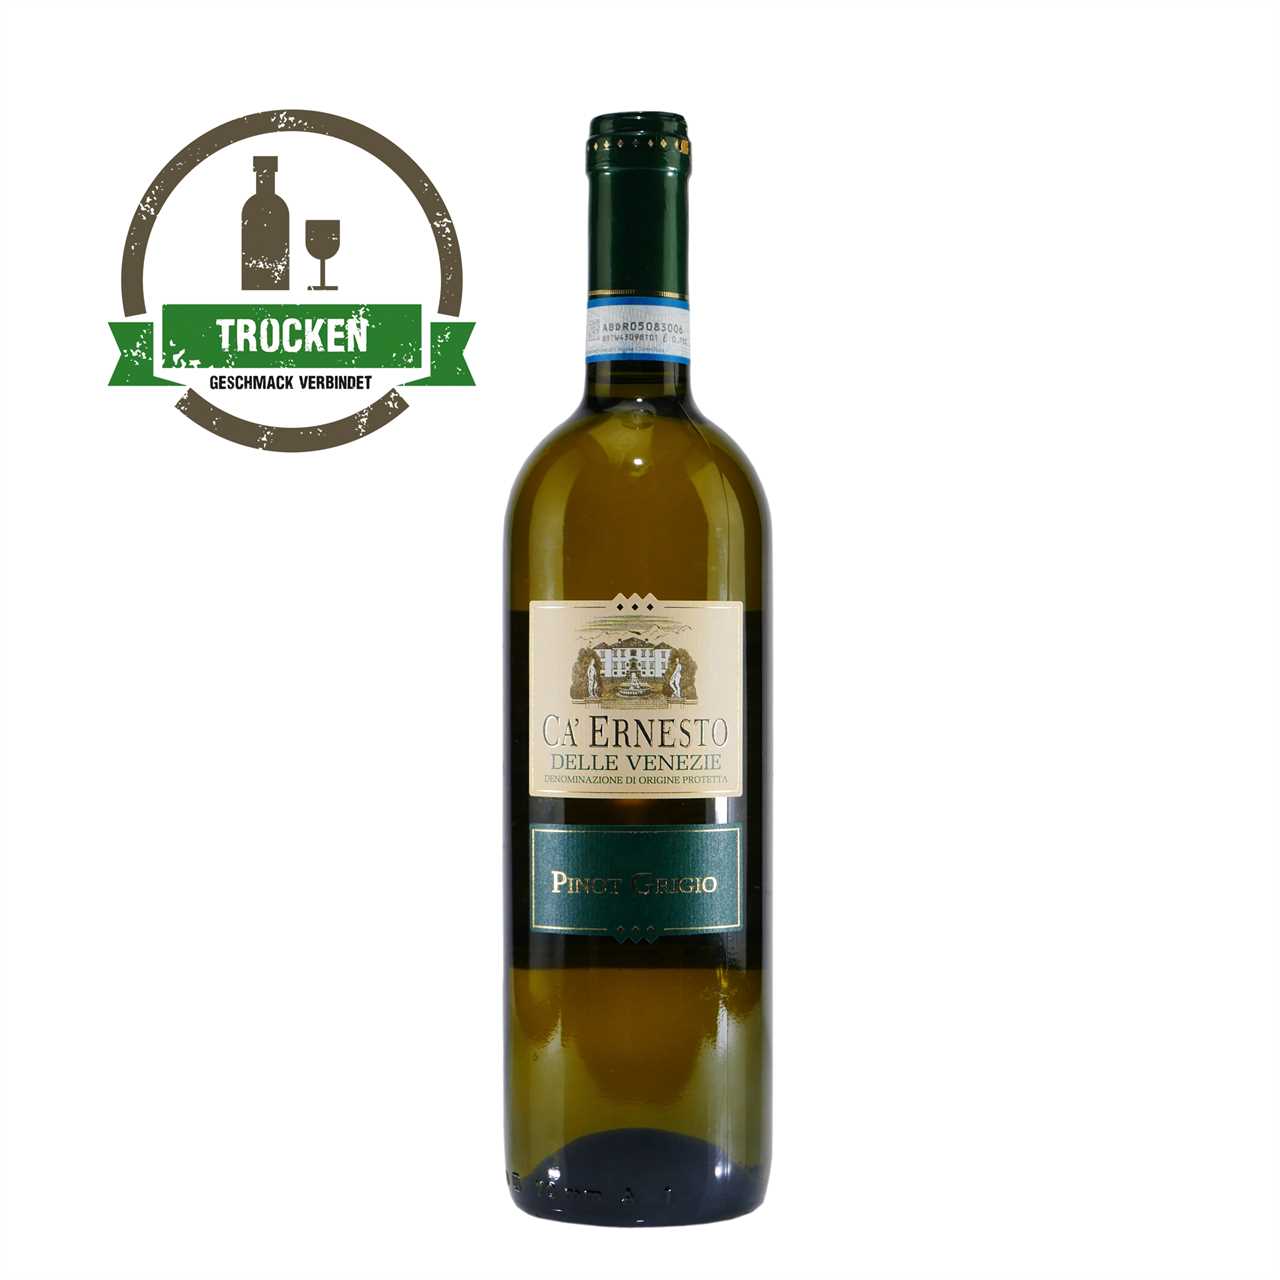 CA' ERNESTO Pinot Grigio DOP Weißwein (6 x 0,75L)